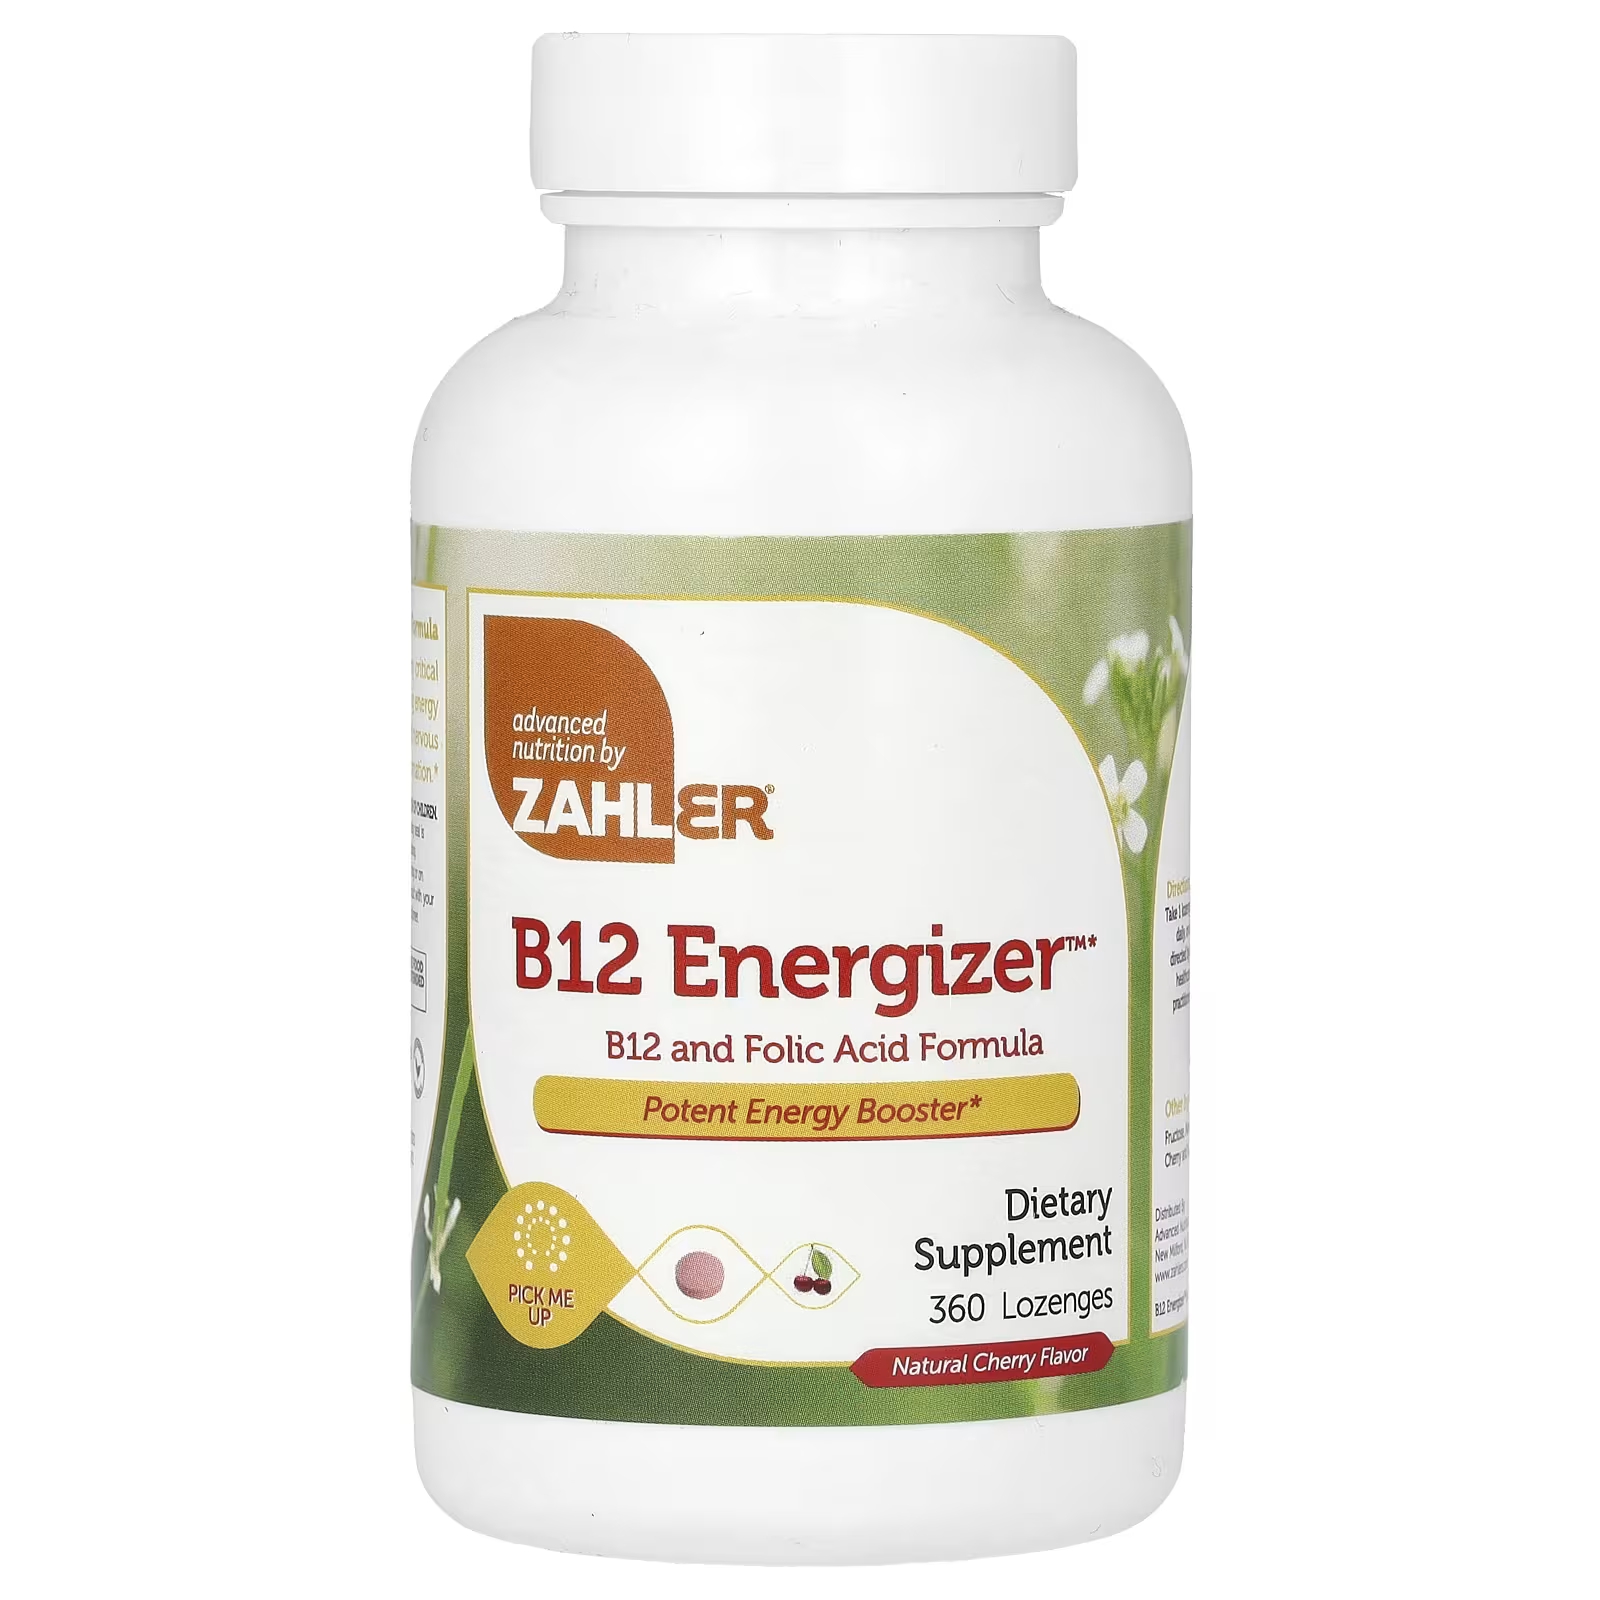 Пищевая добавка Zahler B12 Energizer B12 и формула фолиевой кислоты с натуральной вишней, 360 пастилок